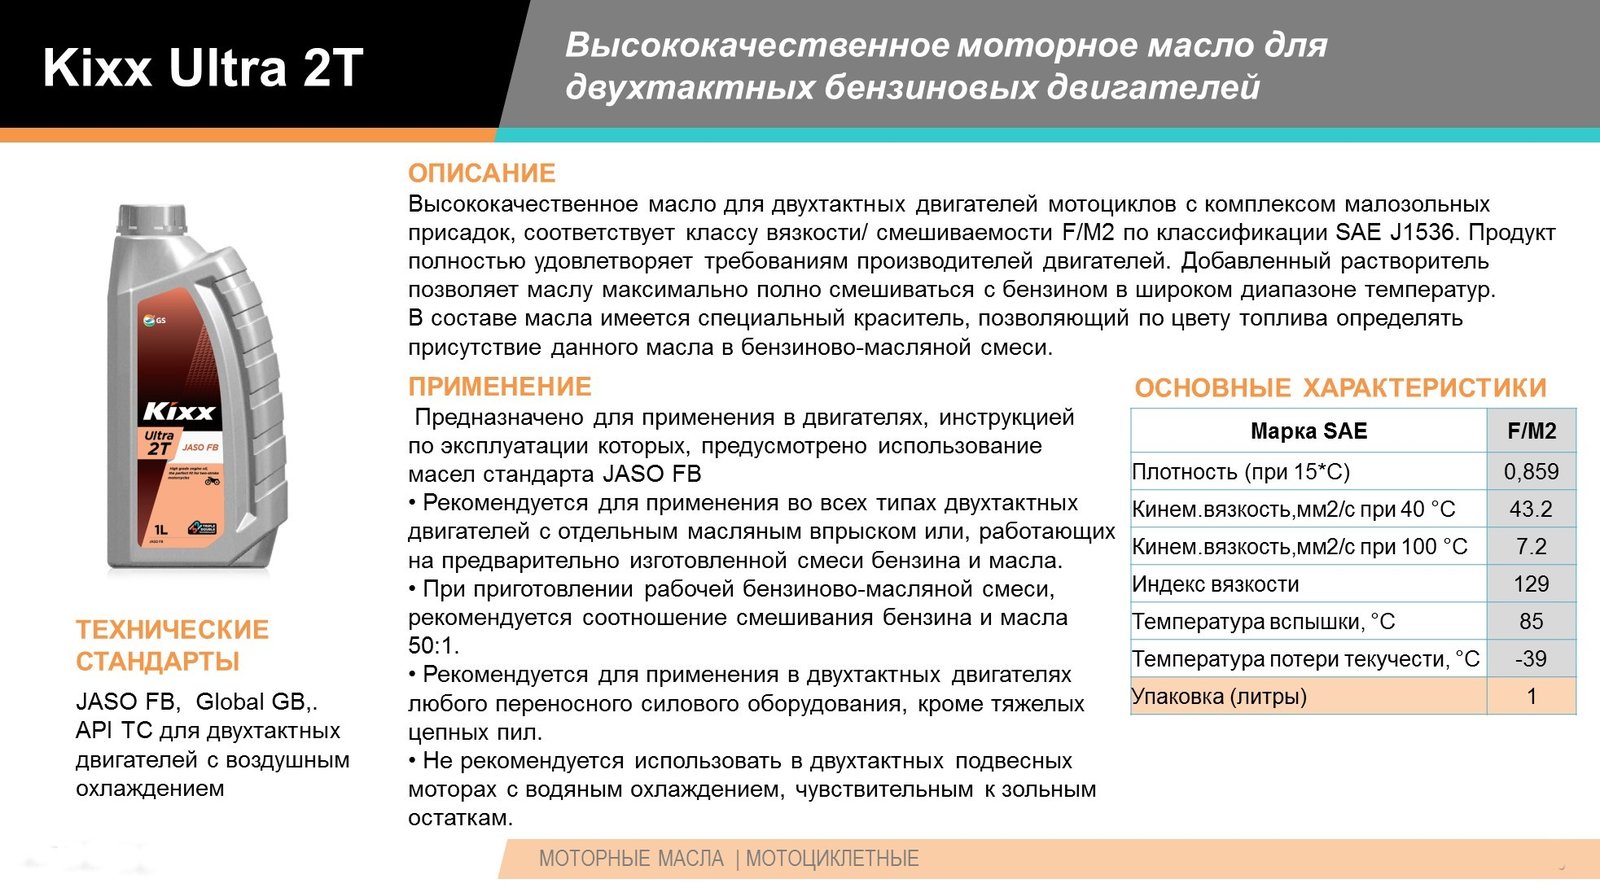 ✅ пропорции бензин масло для бензопилы штиль - dacktil.ru